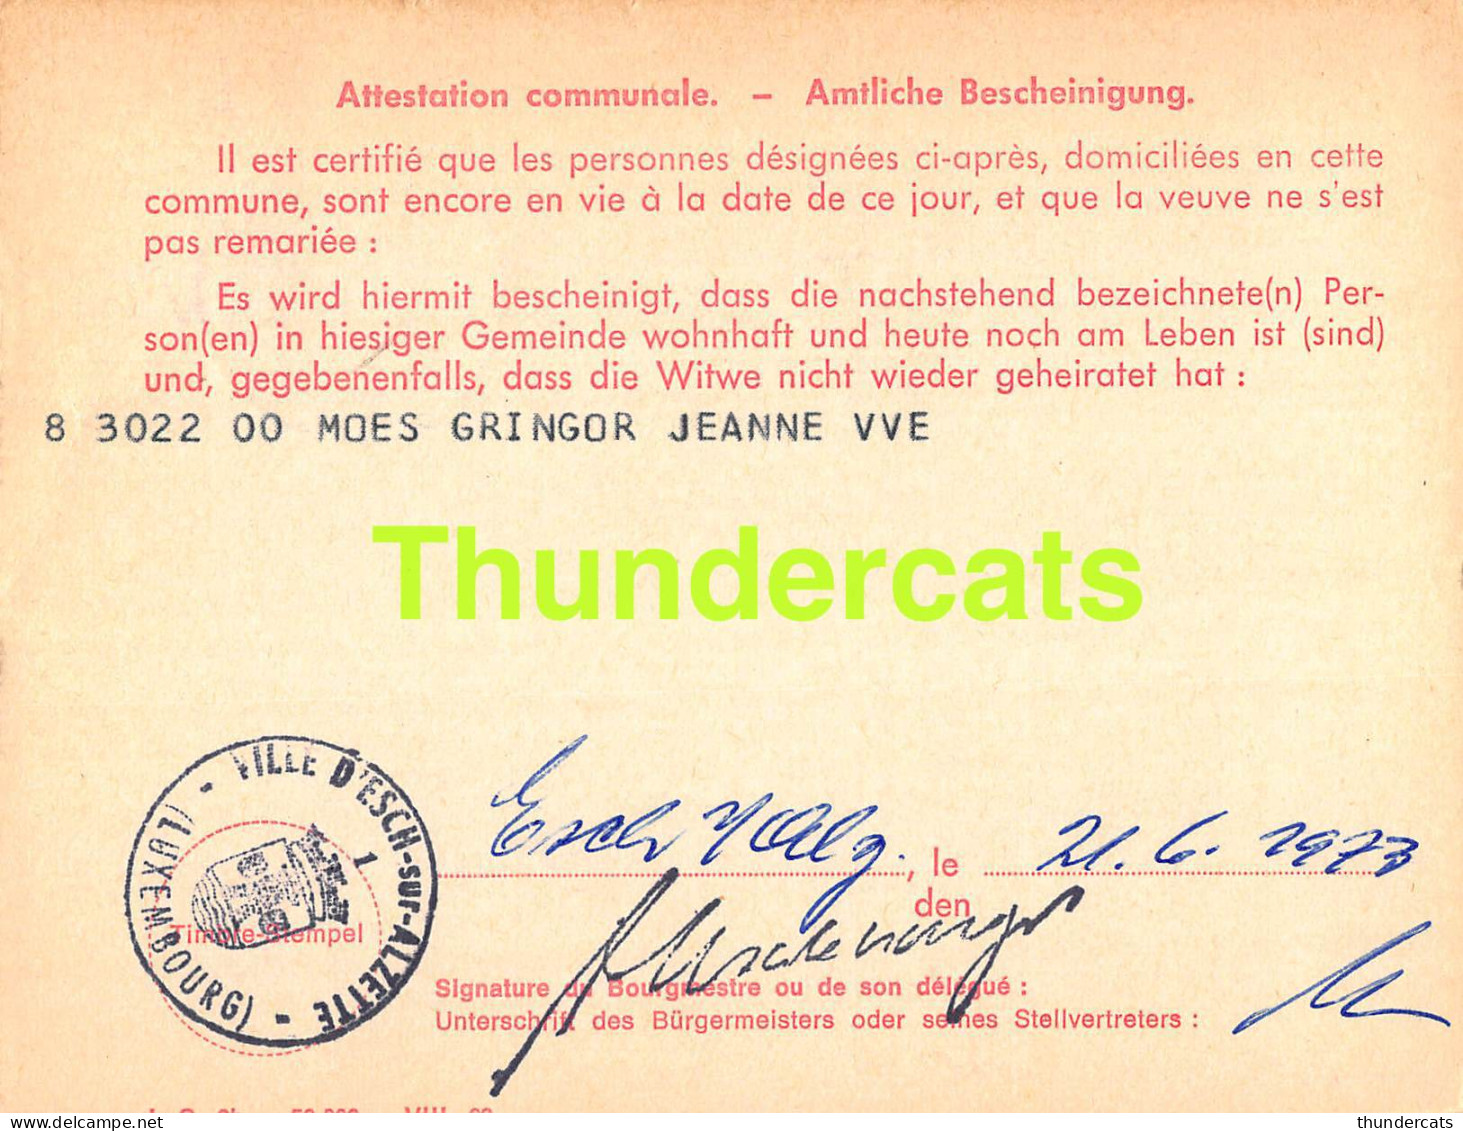 ASSURANCE VIEILLESSE INVALIDITE LUXEMBOURG 1973 MOES GRINGOR VILLE D'ESCH ALZETTE  - Lettres & Documents